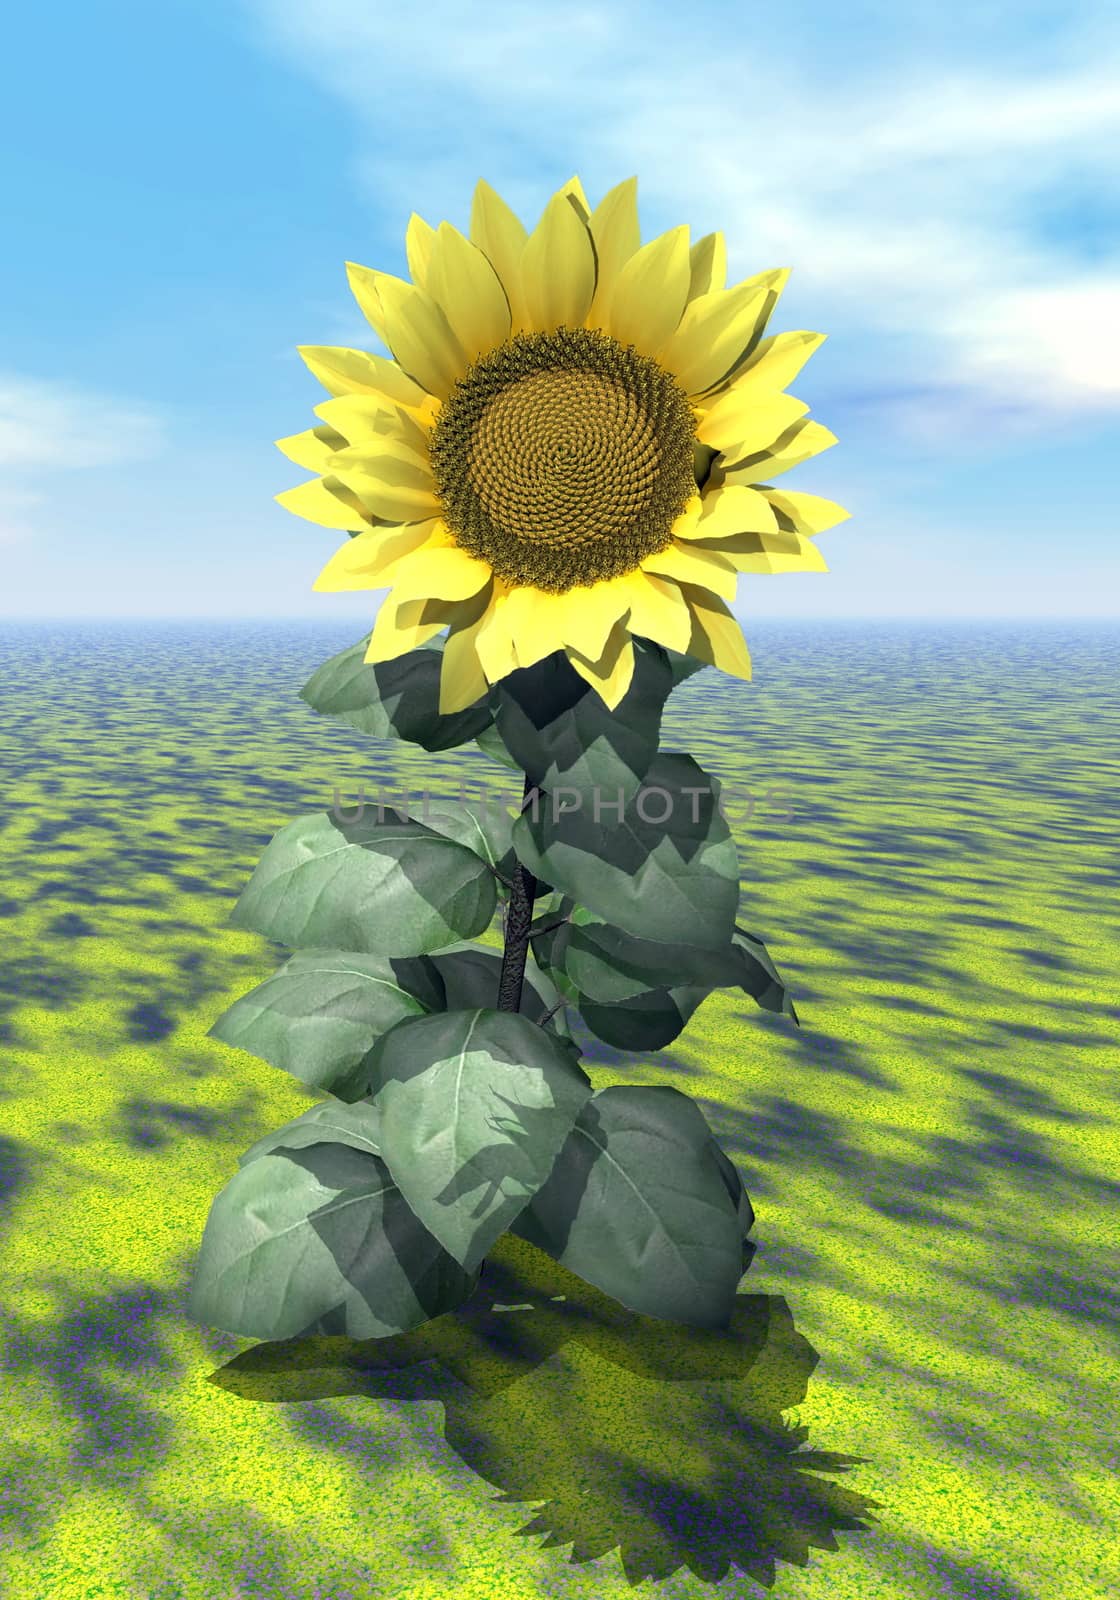 Sunflower power - 3D render by Elenaphotos21